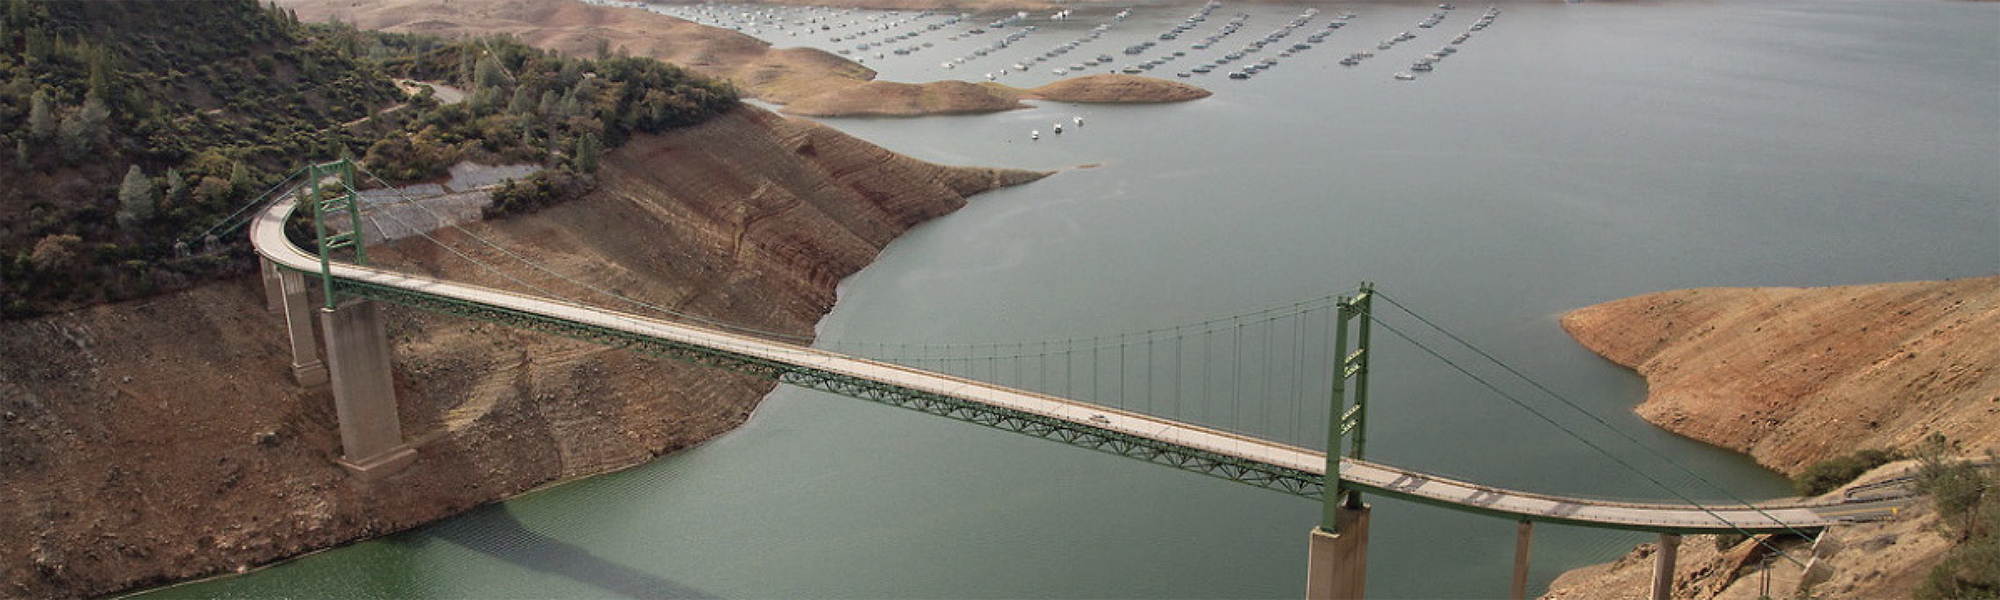 City of Industry-fabriek in Californië van Ecolab gecertificeerd als toonaangevend in watermilieubeheer